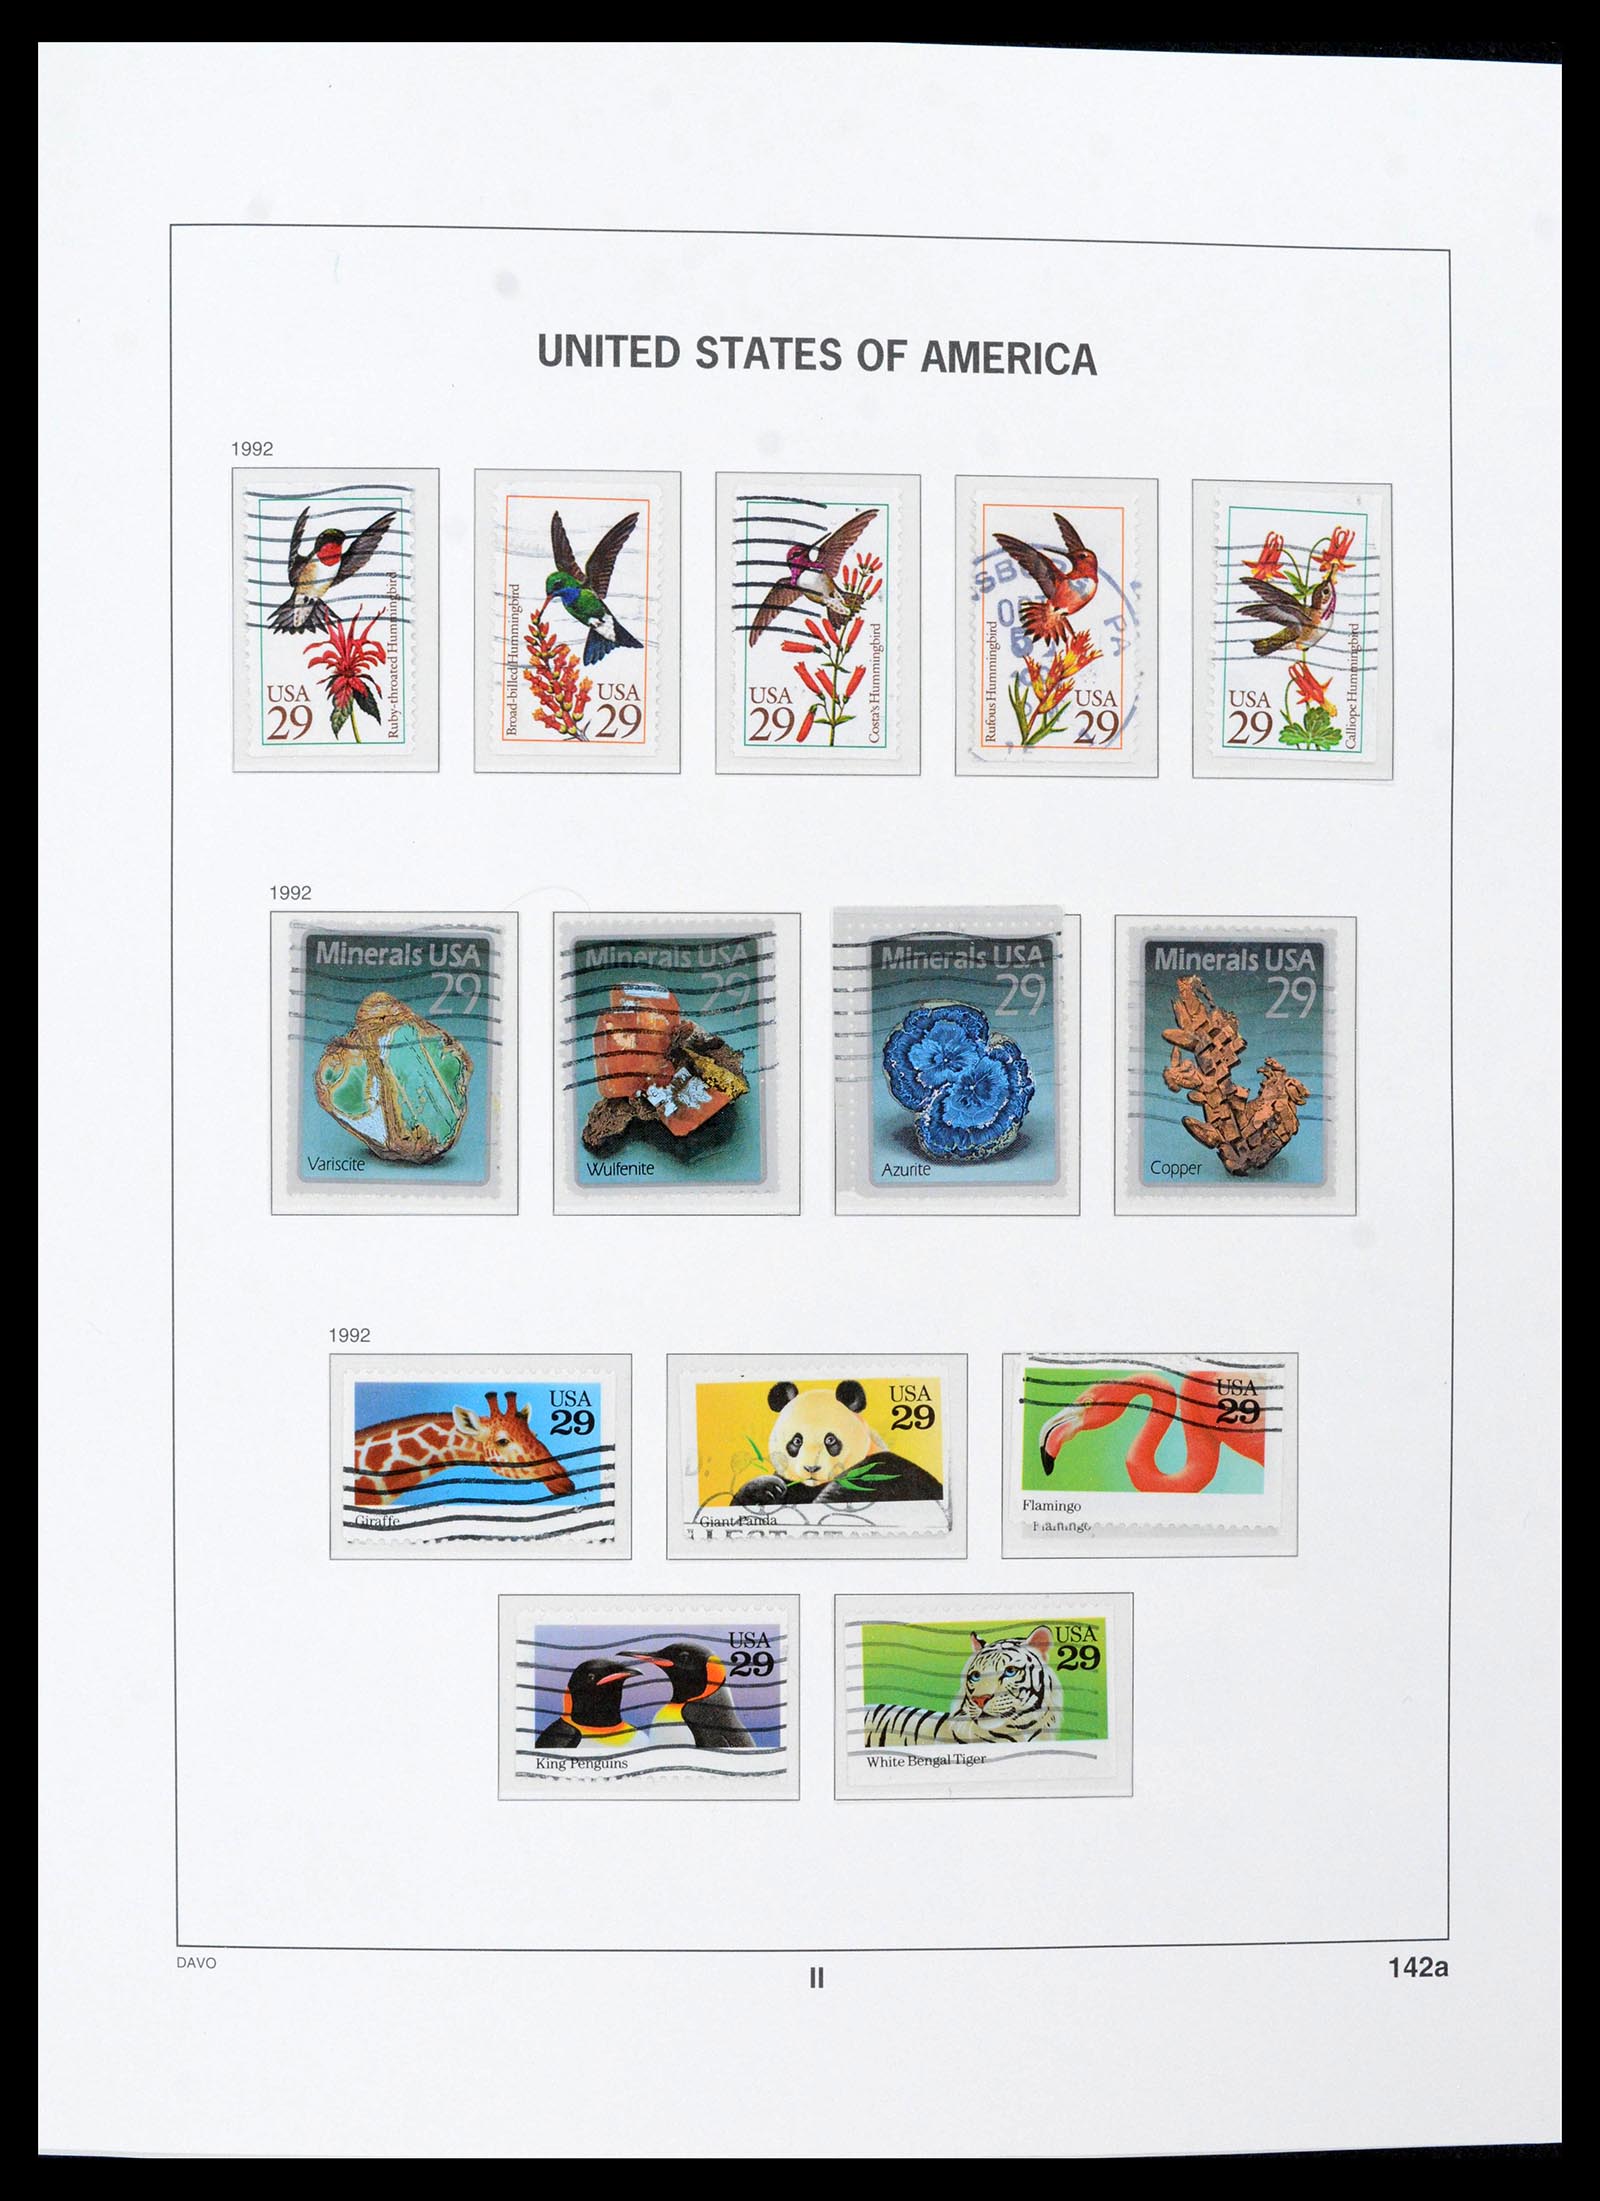 39349 0023 - Stamp collection 39349 USA 1989-2021!